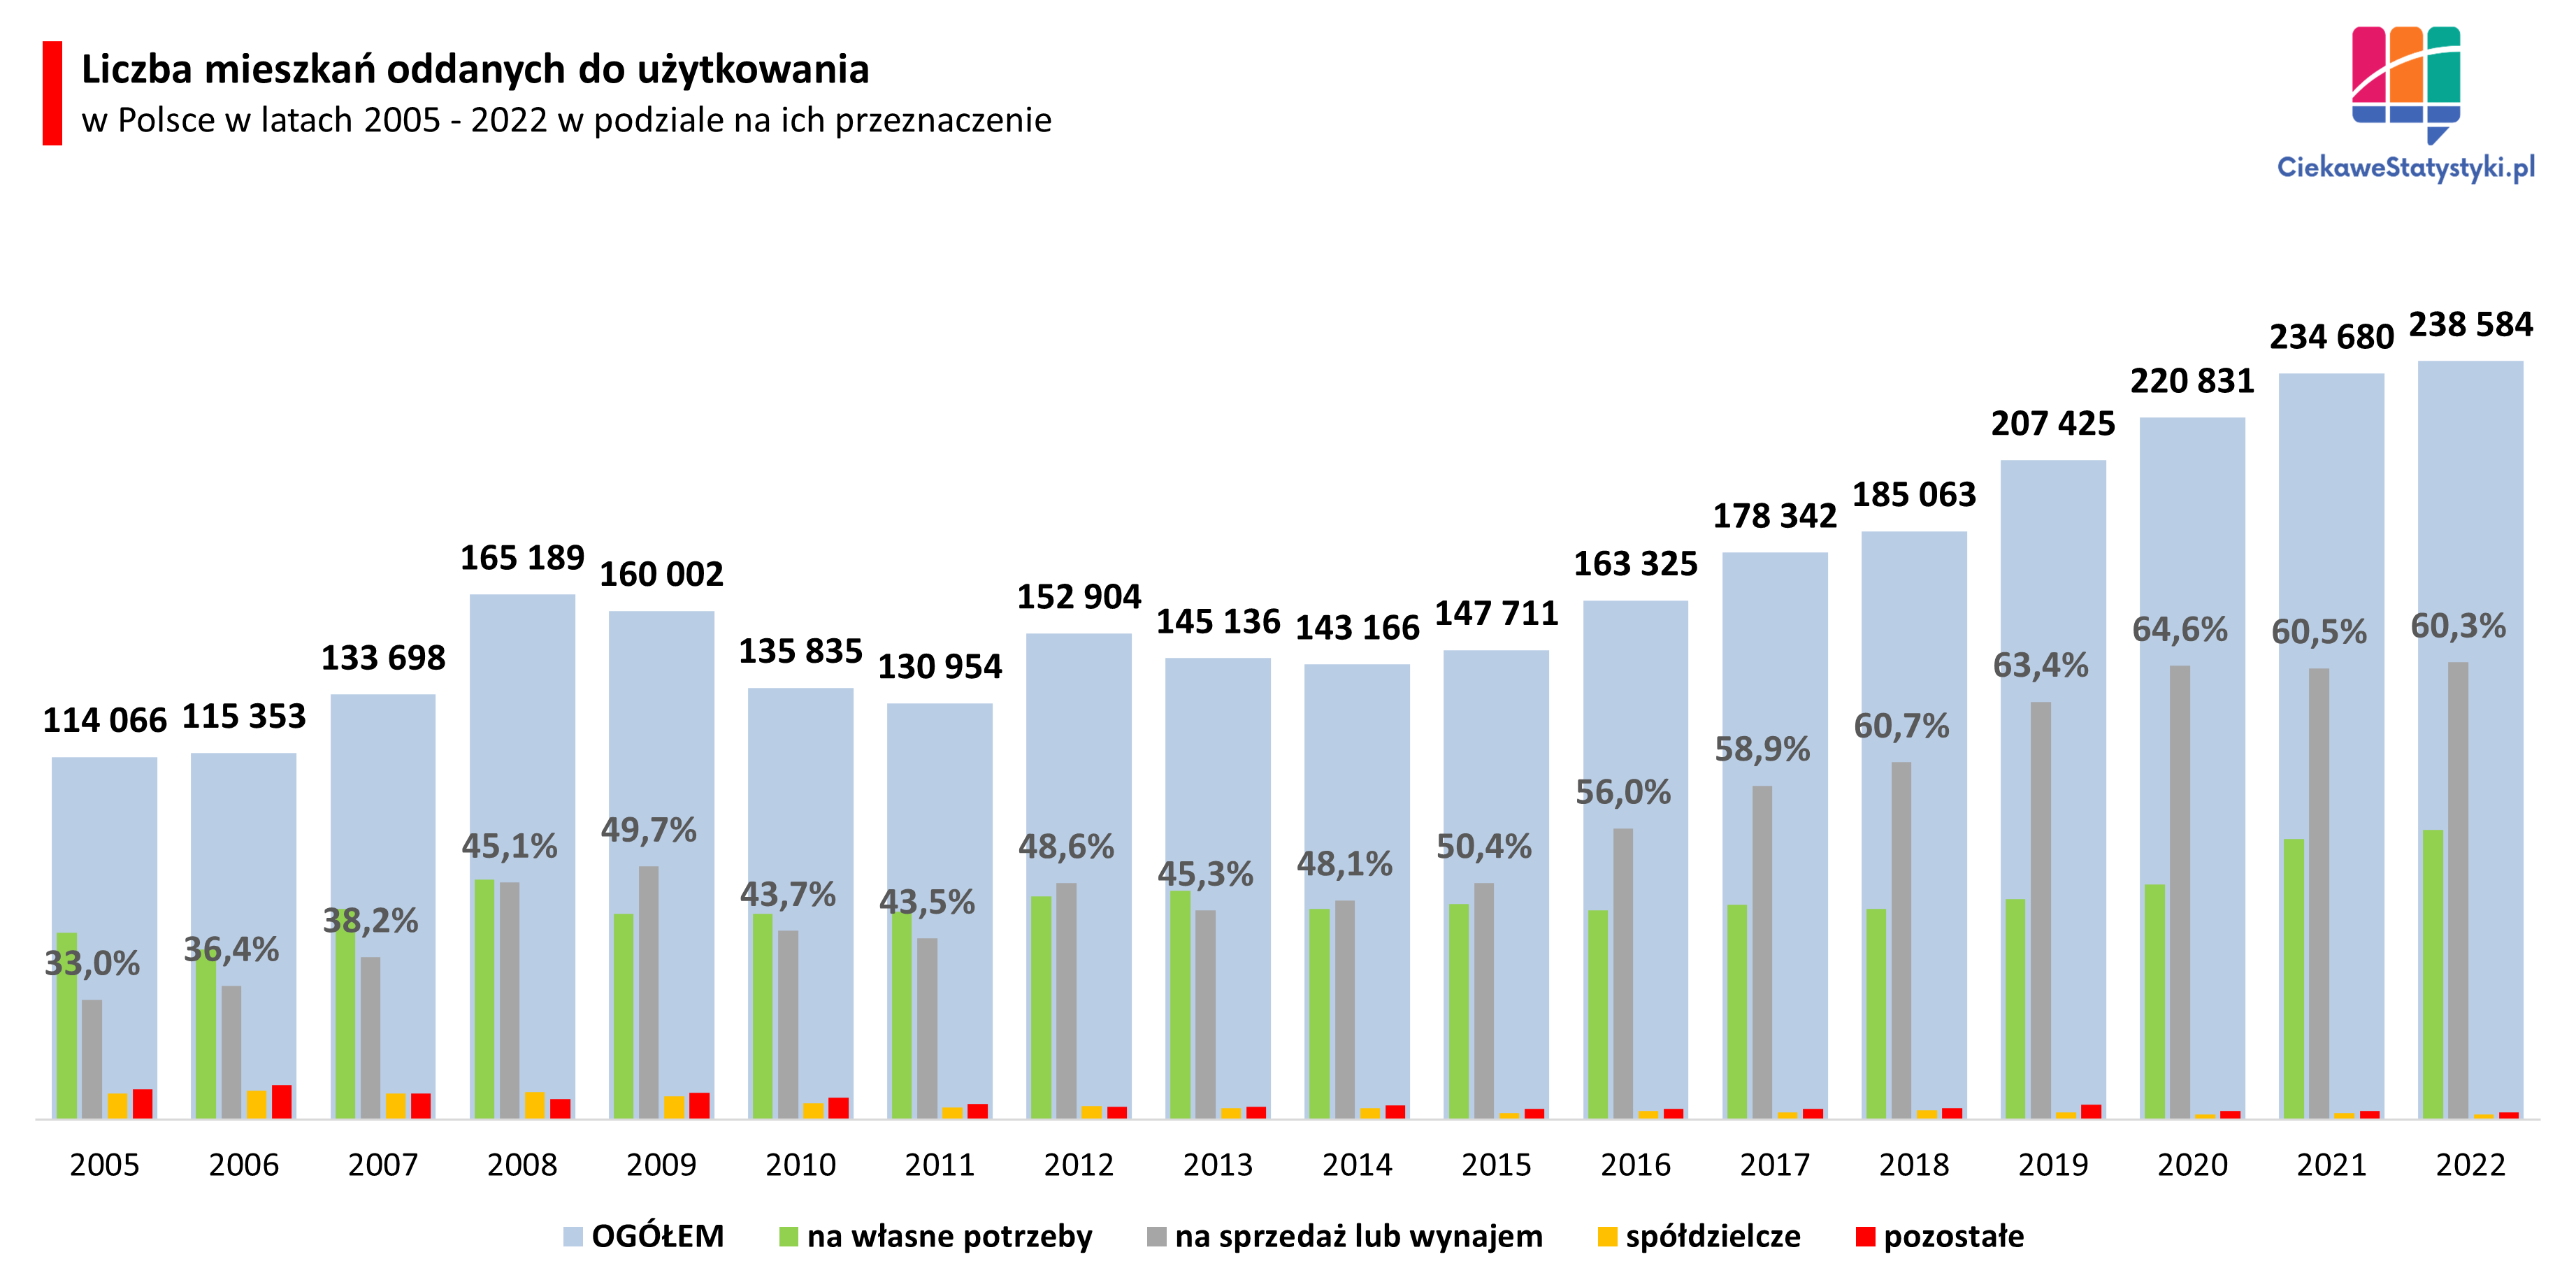 Wykres pokazuje liczbę mieszkań budowanych w Polsce wg ich przeznaczenia